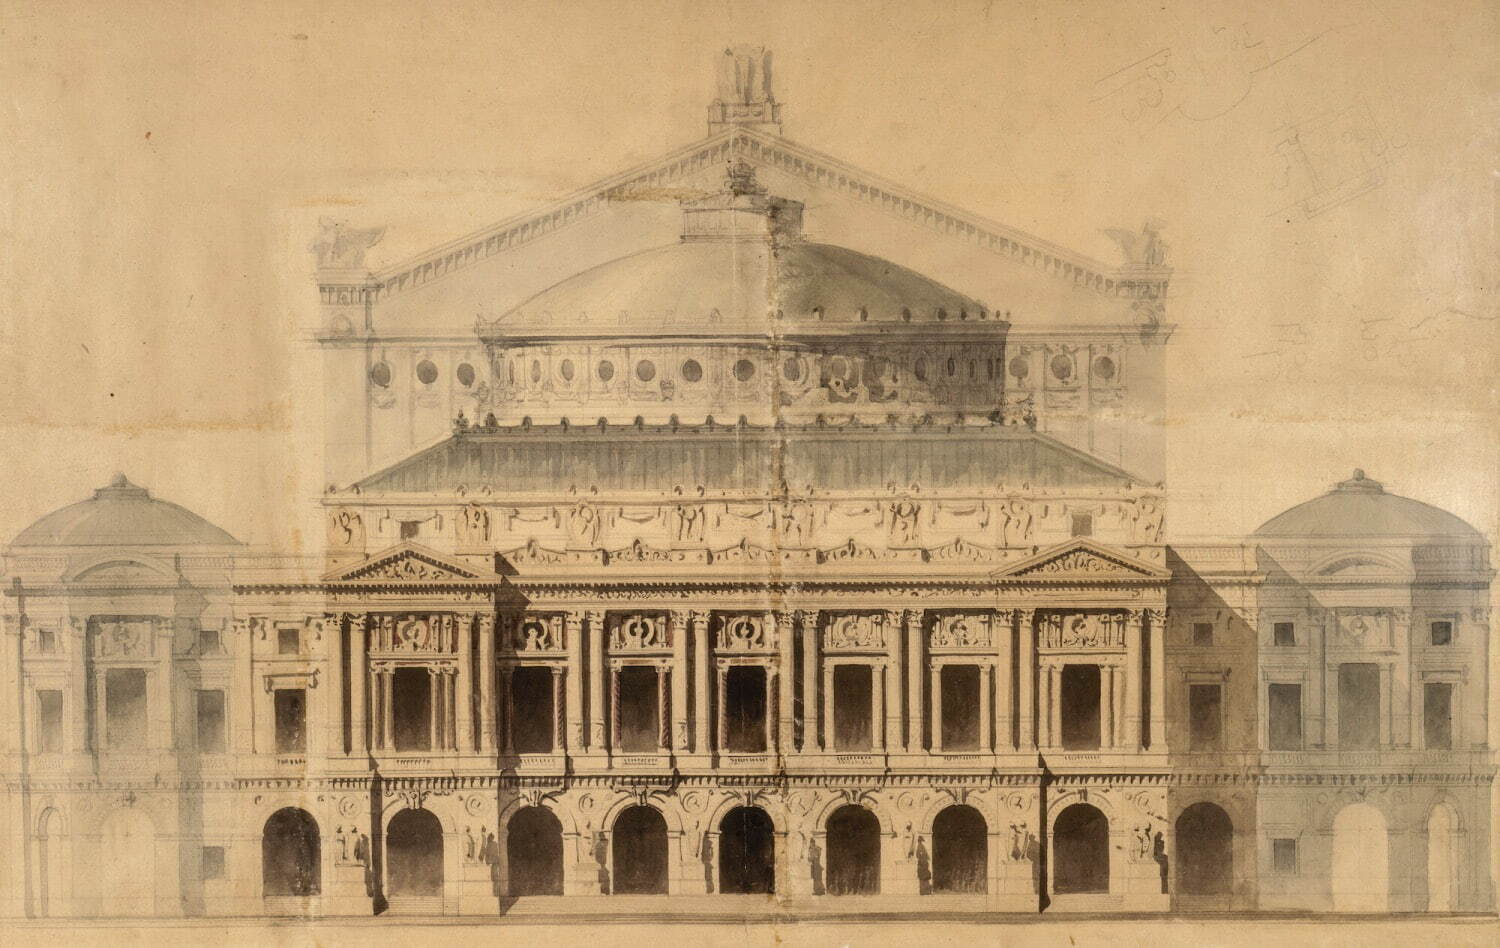 シャルル・ガルニエ《ガルニエ宮ファサードの立面図》1861年 フランス国立図書館
©Bibliothèque Nationale de France